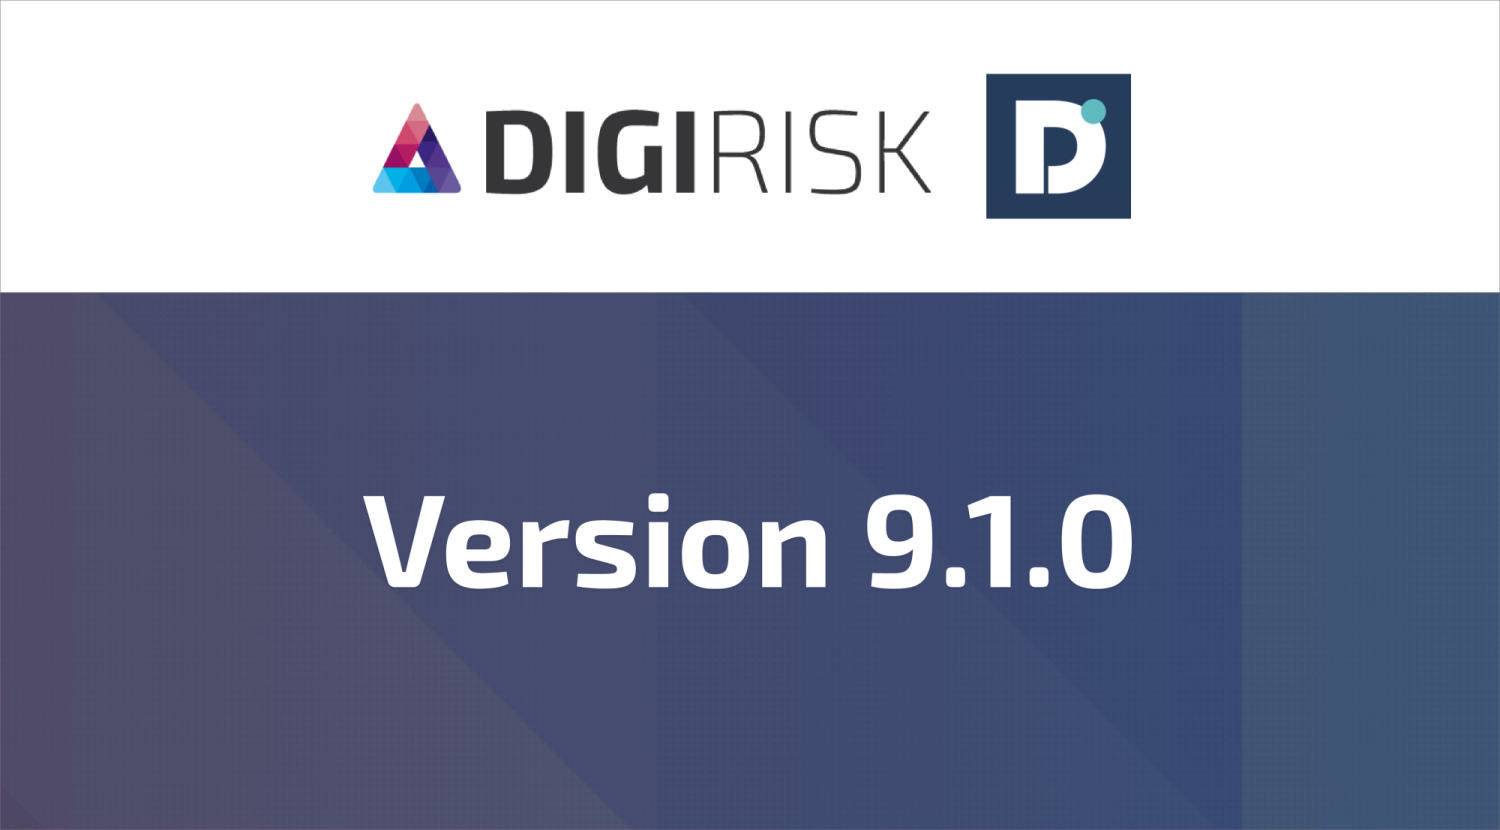 Digirisk version 9.1.0